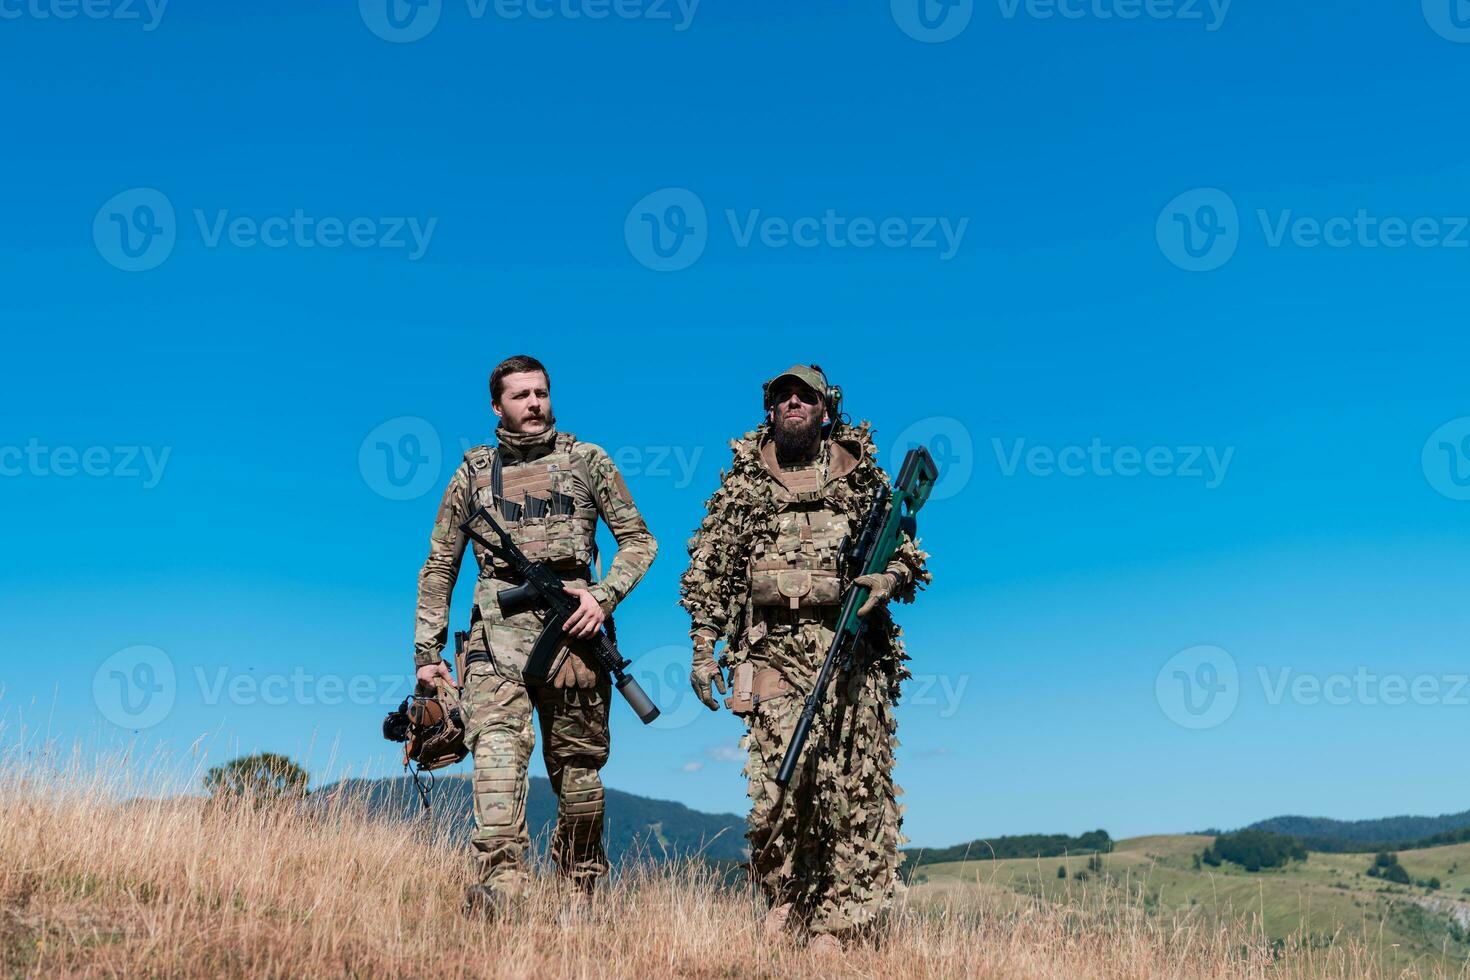 en prickskytt team trupp av soldater är gående hemlig. prickskytt assistent och team ledare gående och siktar i natur med gul gräs och blå himmel. taktisk kamouflage enhetlig. foto